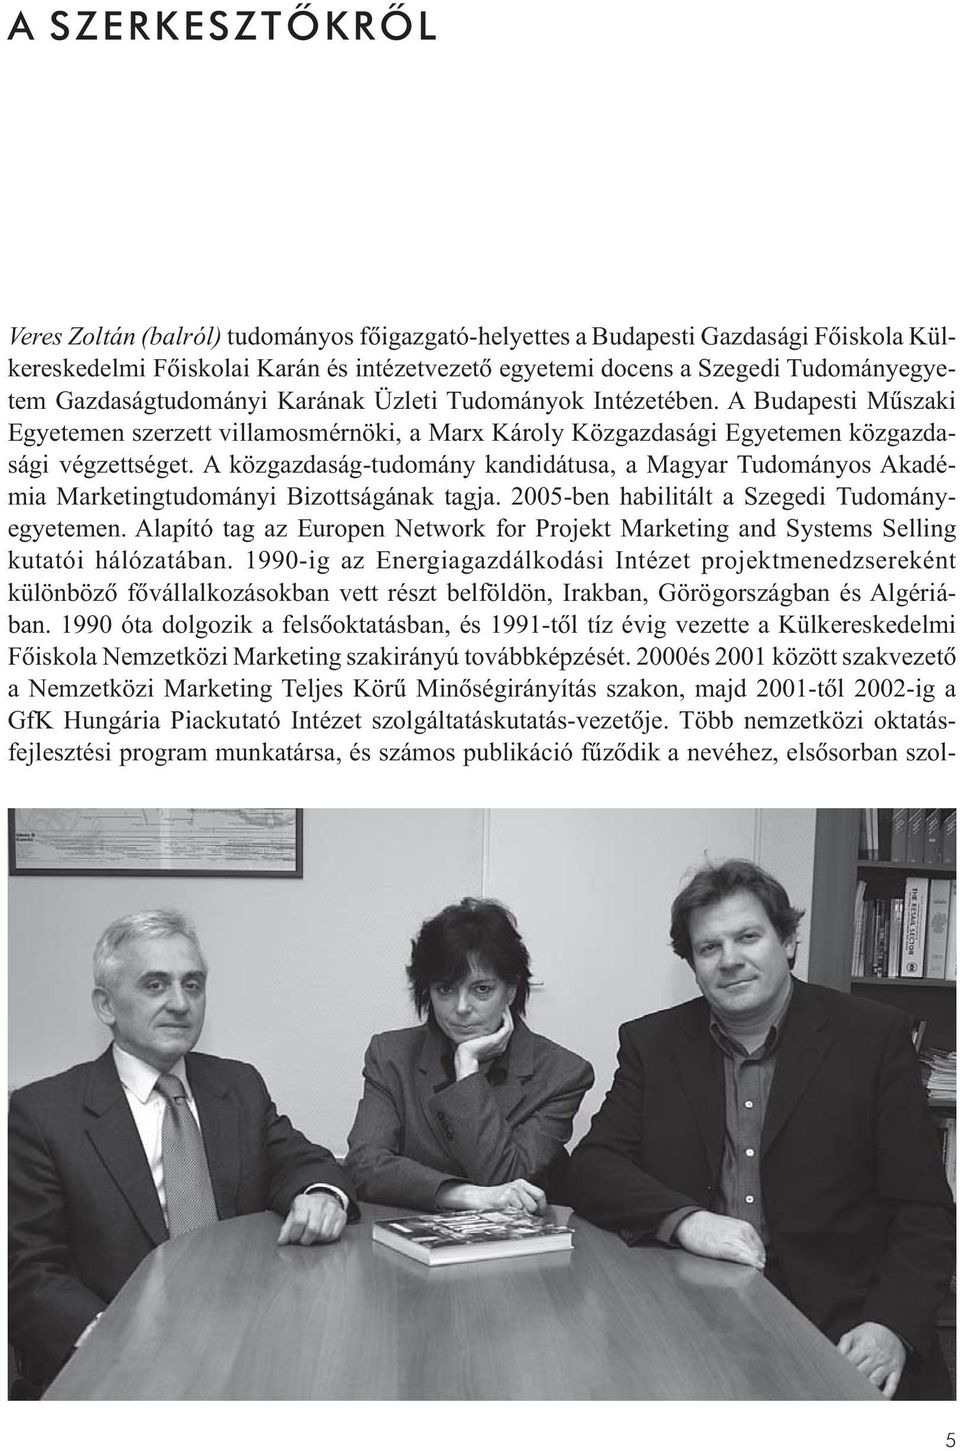 A közgazdaság-tudomány kandidátusa, a Magyar Tudományos Akadémia Marketingtudományi Bizottságának tagja. 2005-ben habilitált a Szegedi Tudományegyetemen.